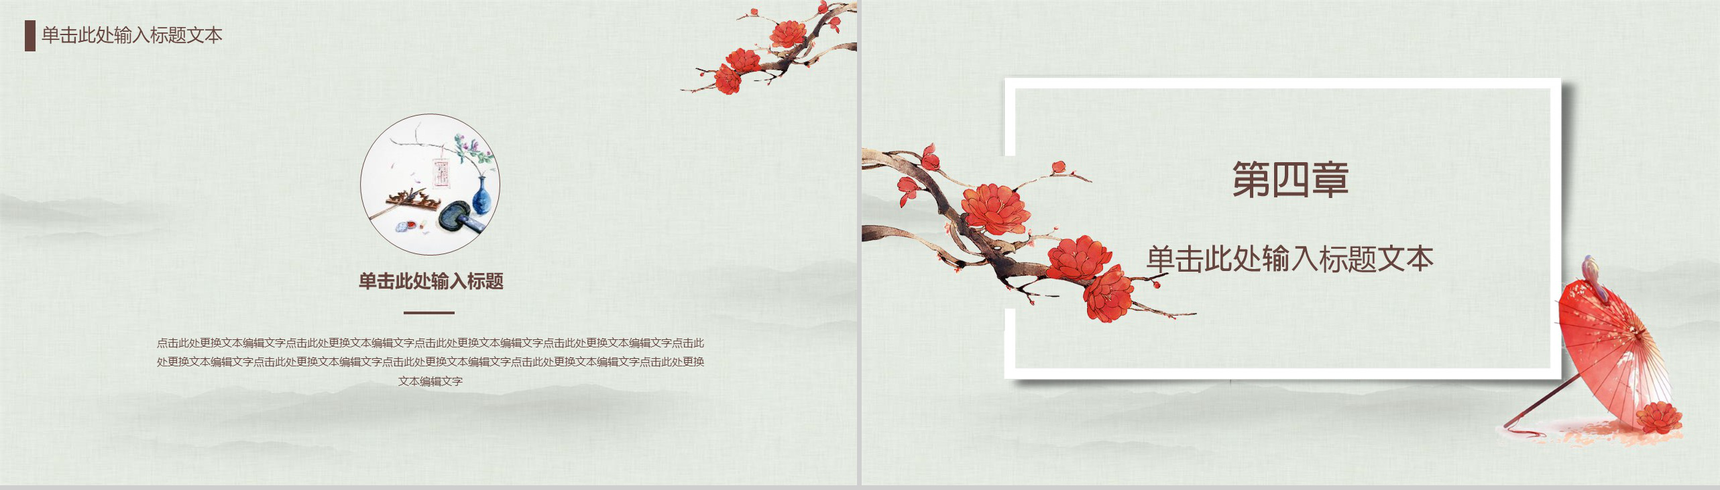 中国传统文化宫廷风传统文化PPT模板-10